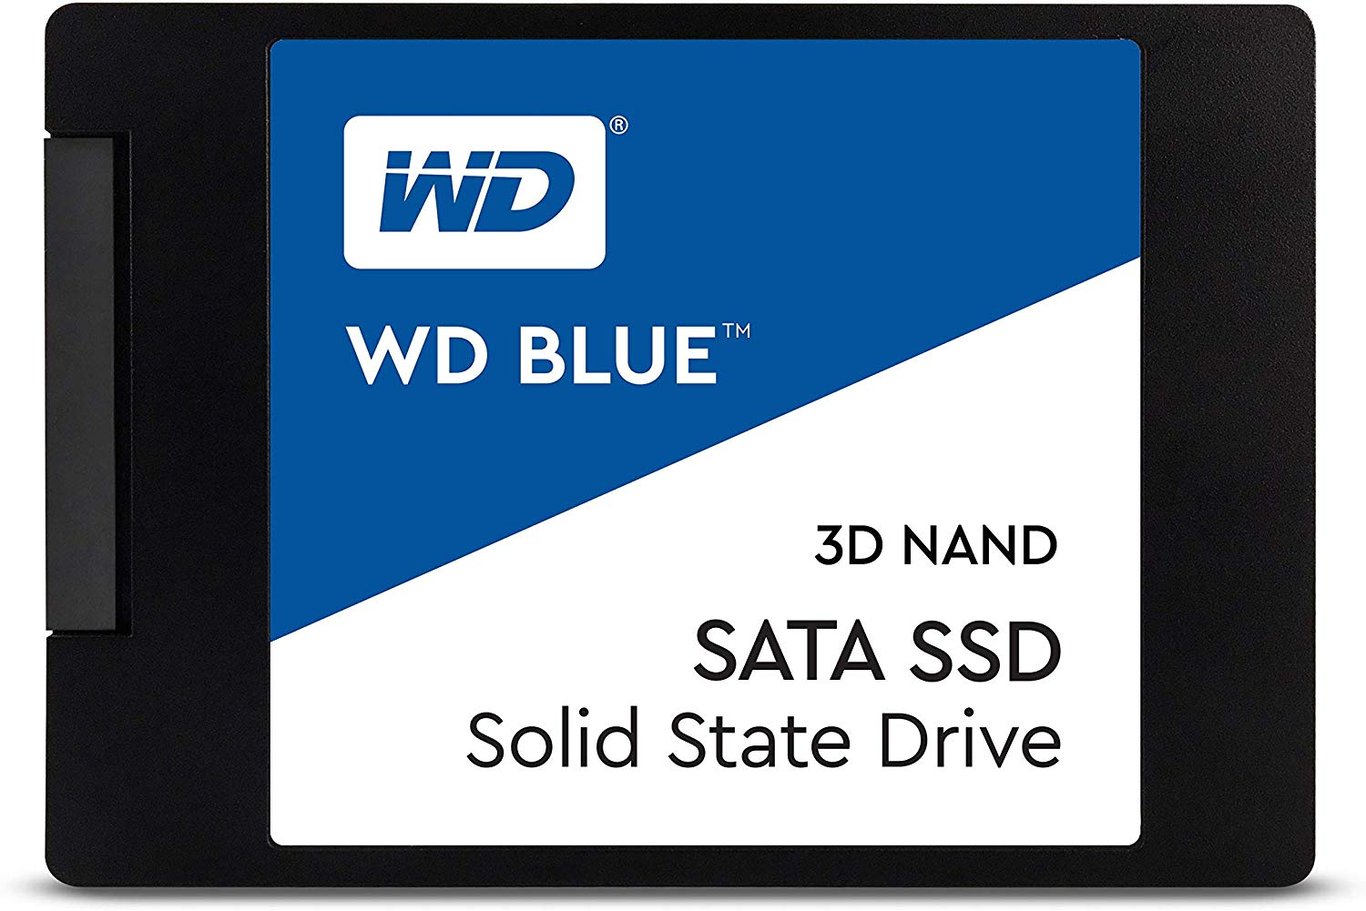 WD Blue 250GB 3D TLC SATA III SSD